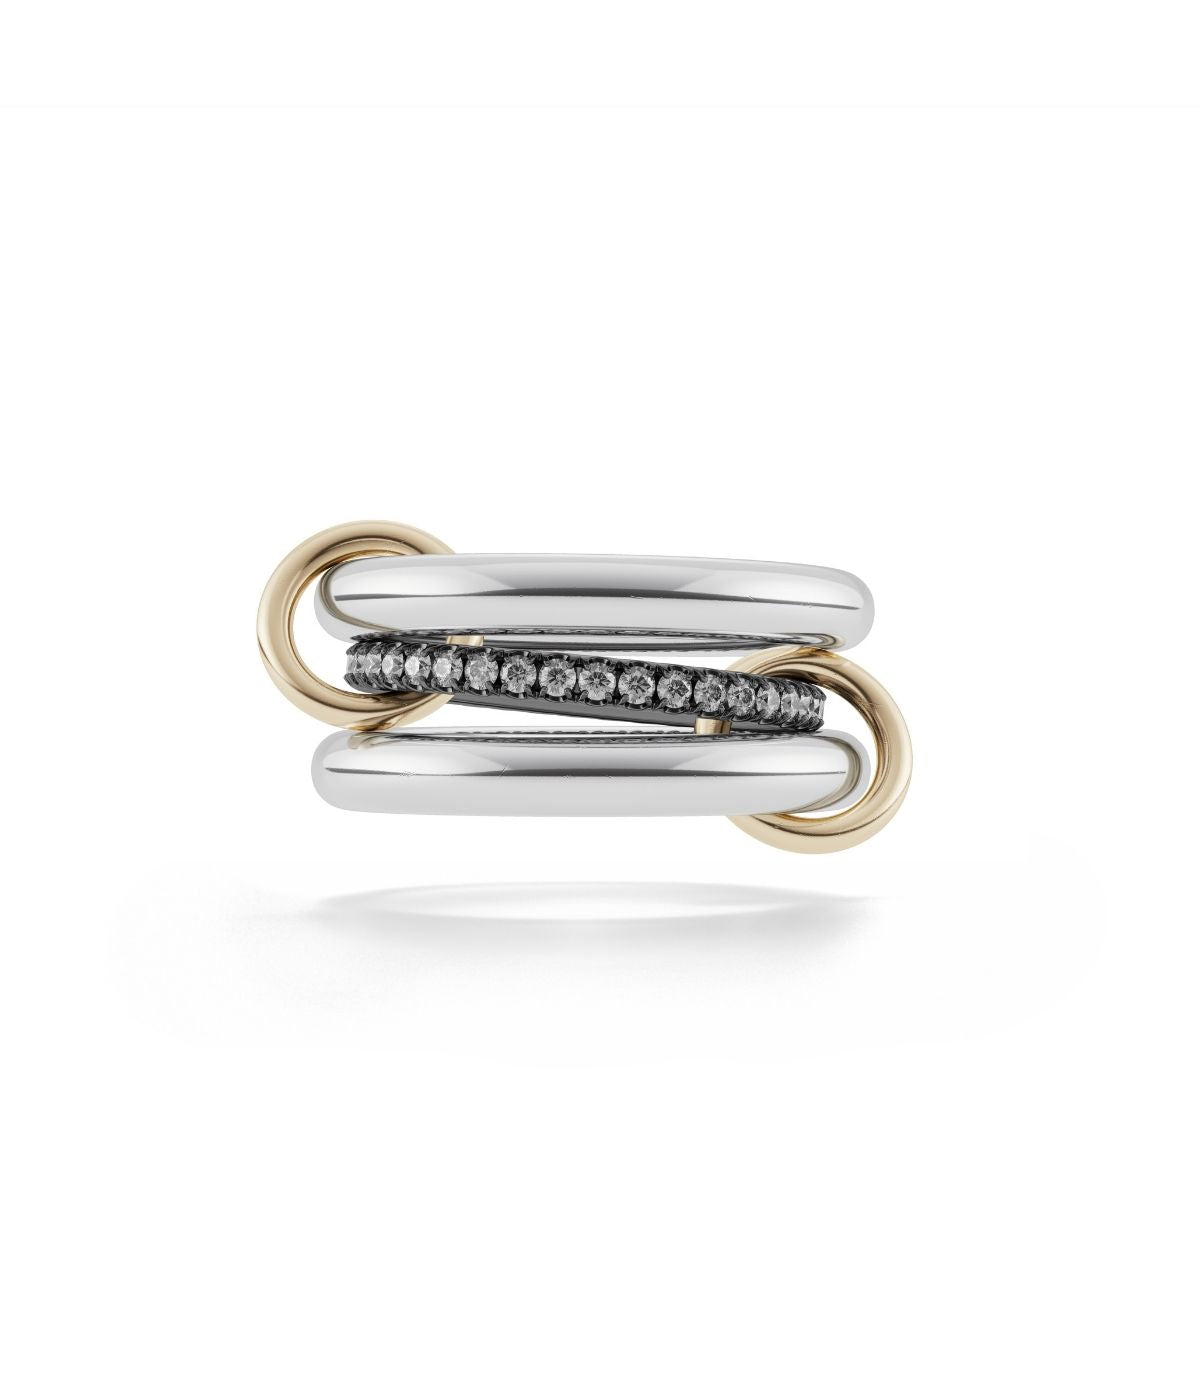 Libra silver band ring